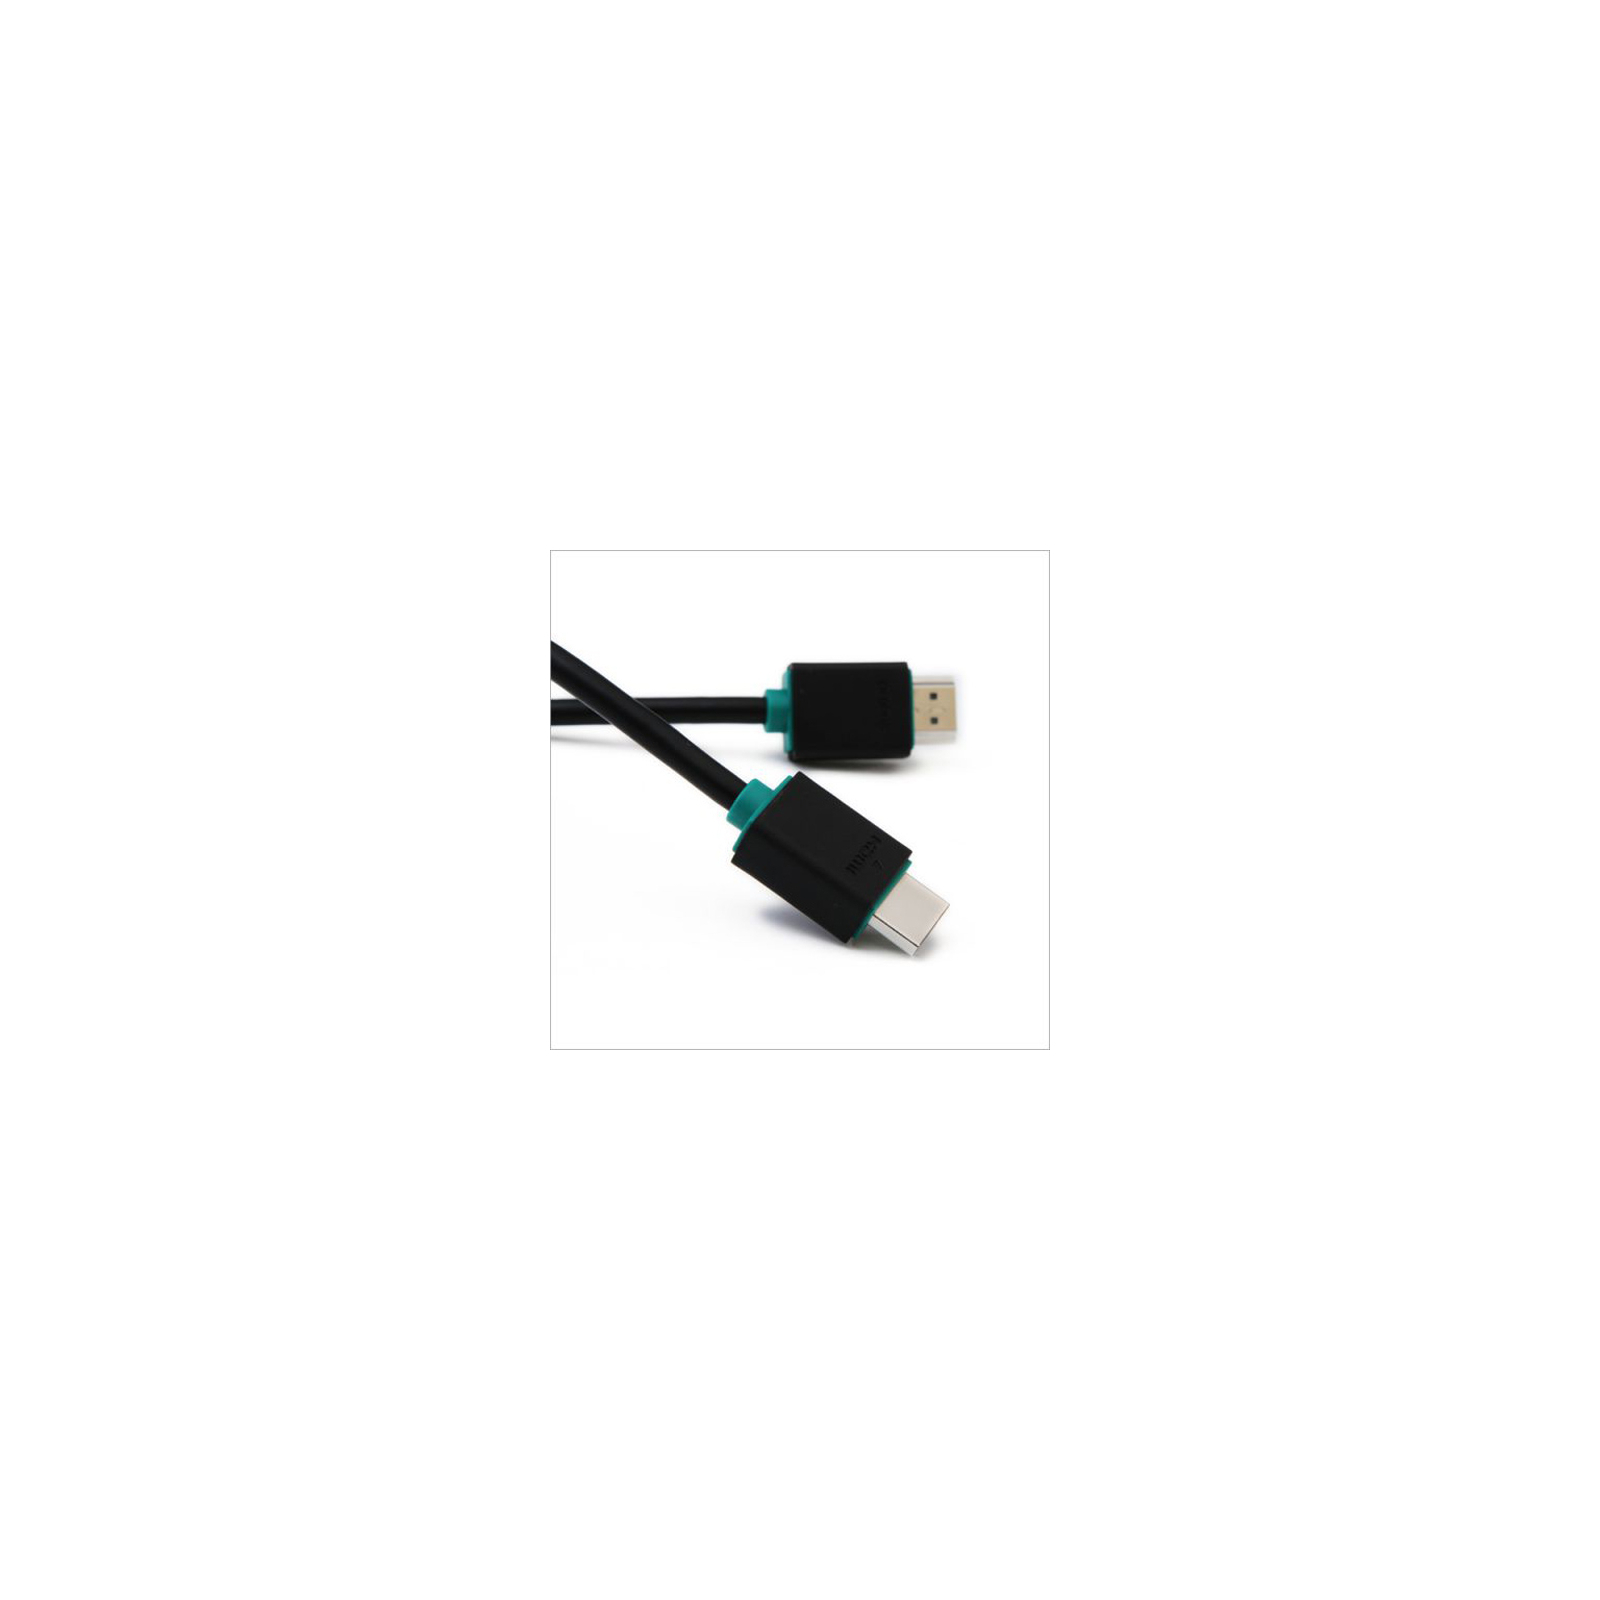 Кабель мультимедийный HDMI to HDMI 1.5m Prolink (PB348-0150) изображение 2